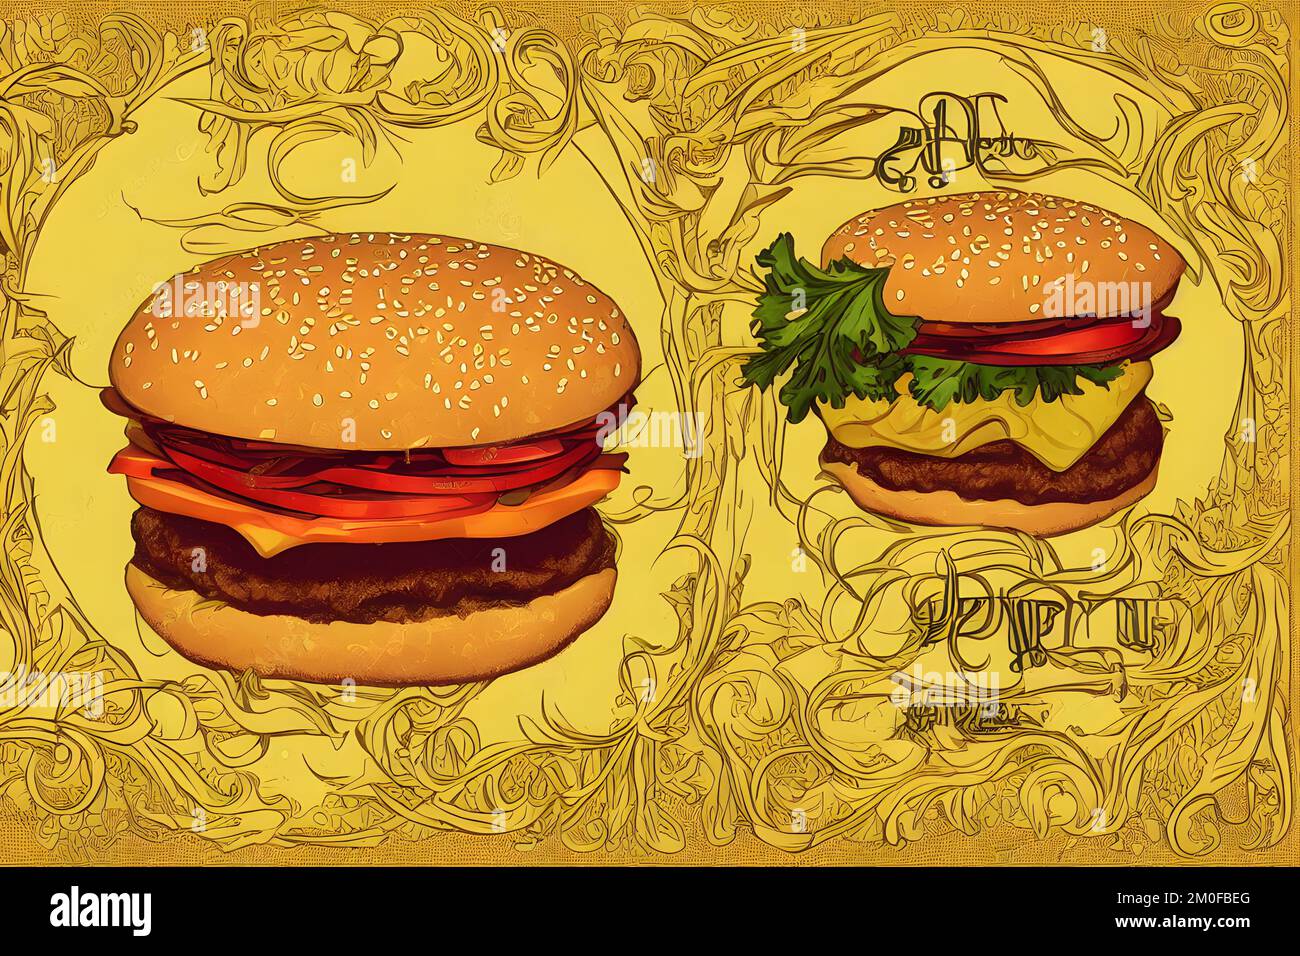 Illustrazione di hamburger in stile Art Nouveau, un classico fast food Foto Stock